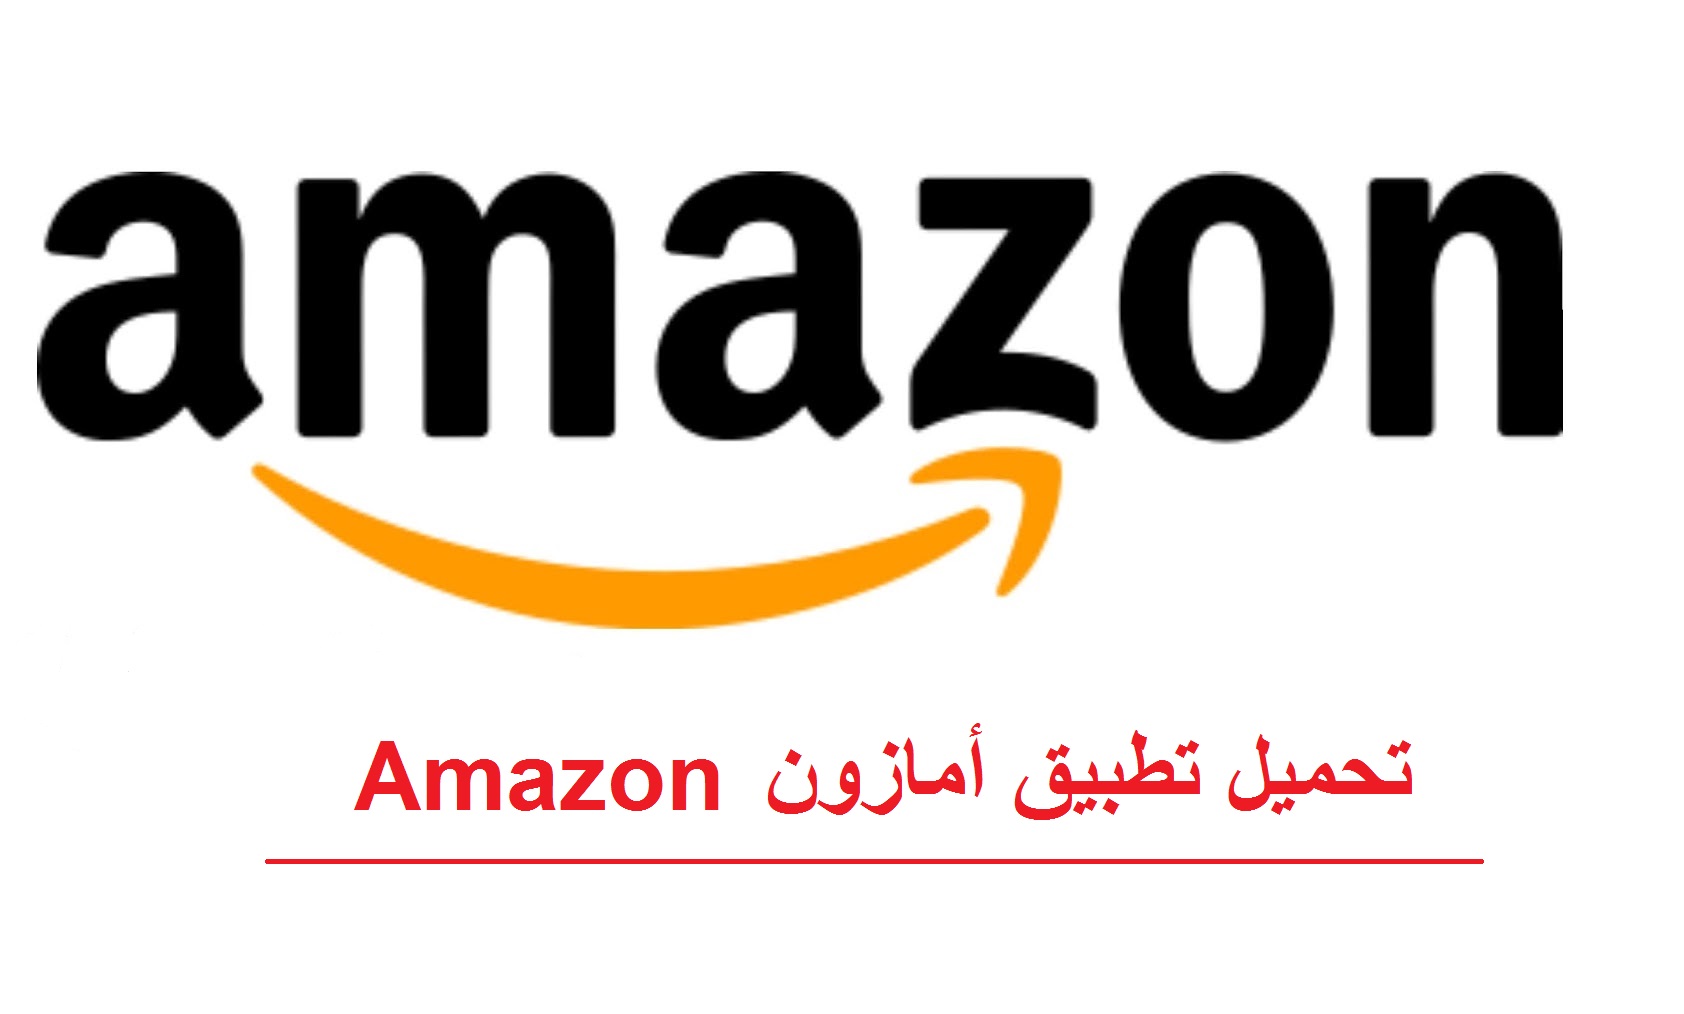 بعد طول انتظار انطلاق شركة أمازون السعودية Amazon عملاق التجارة الإلكترونية